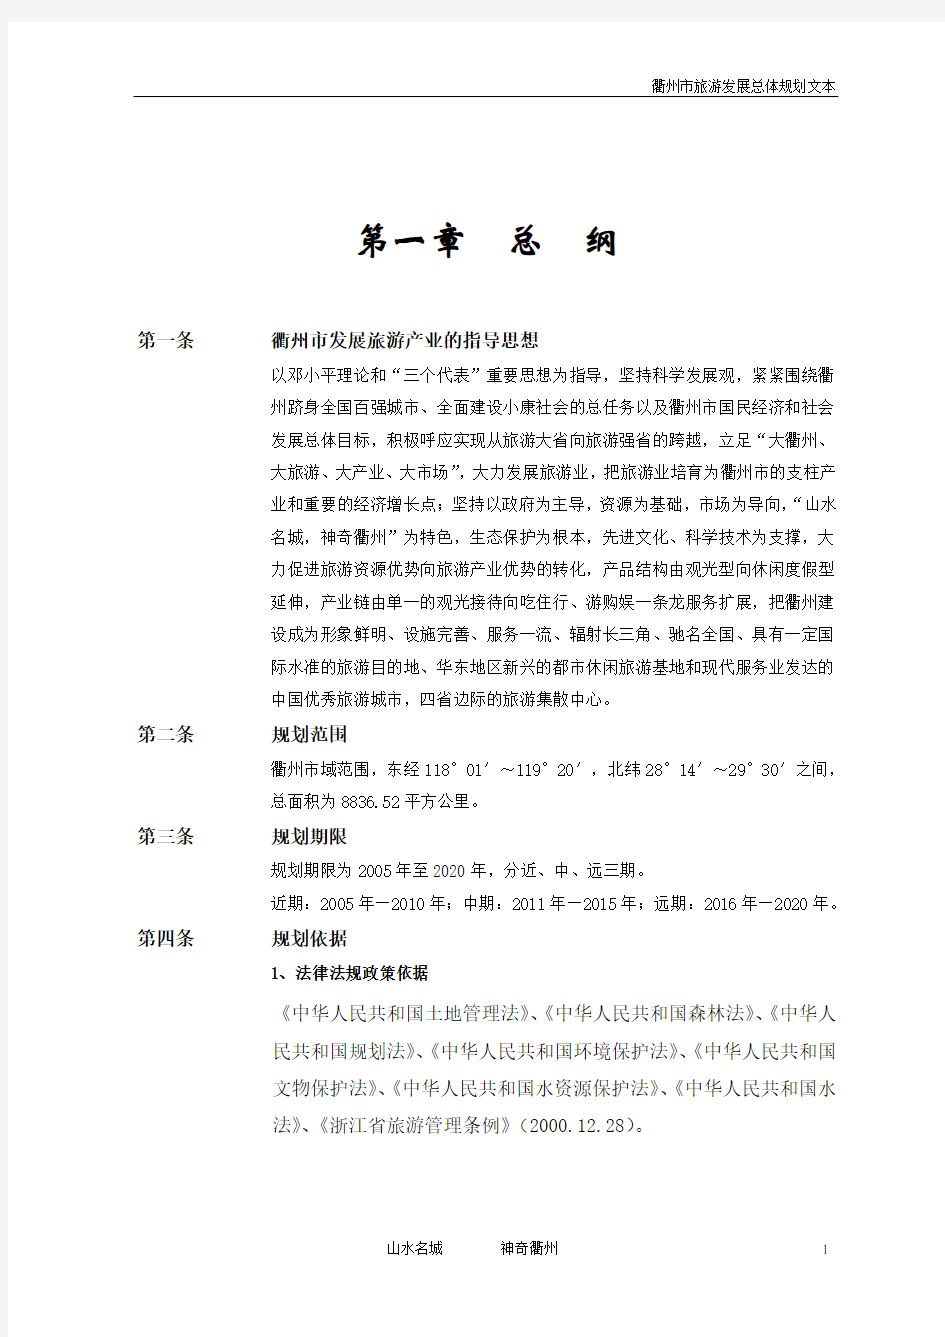 衢州市旅游发展总体规划文本